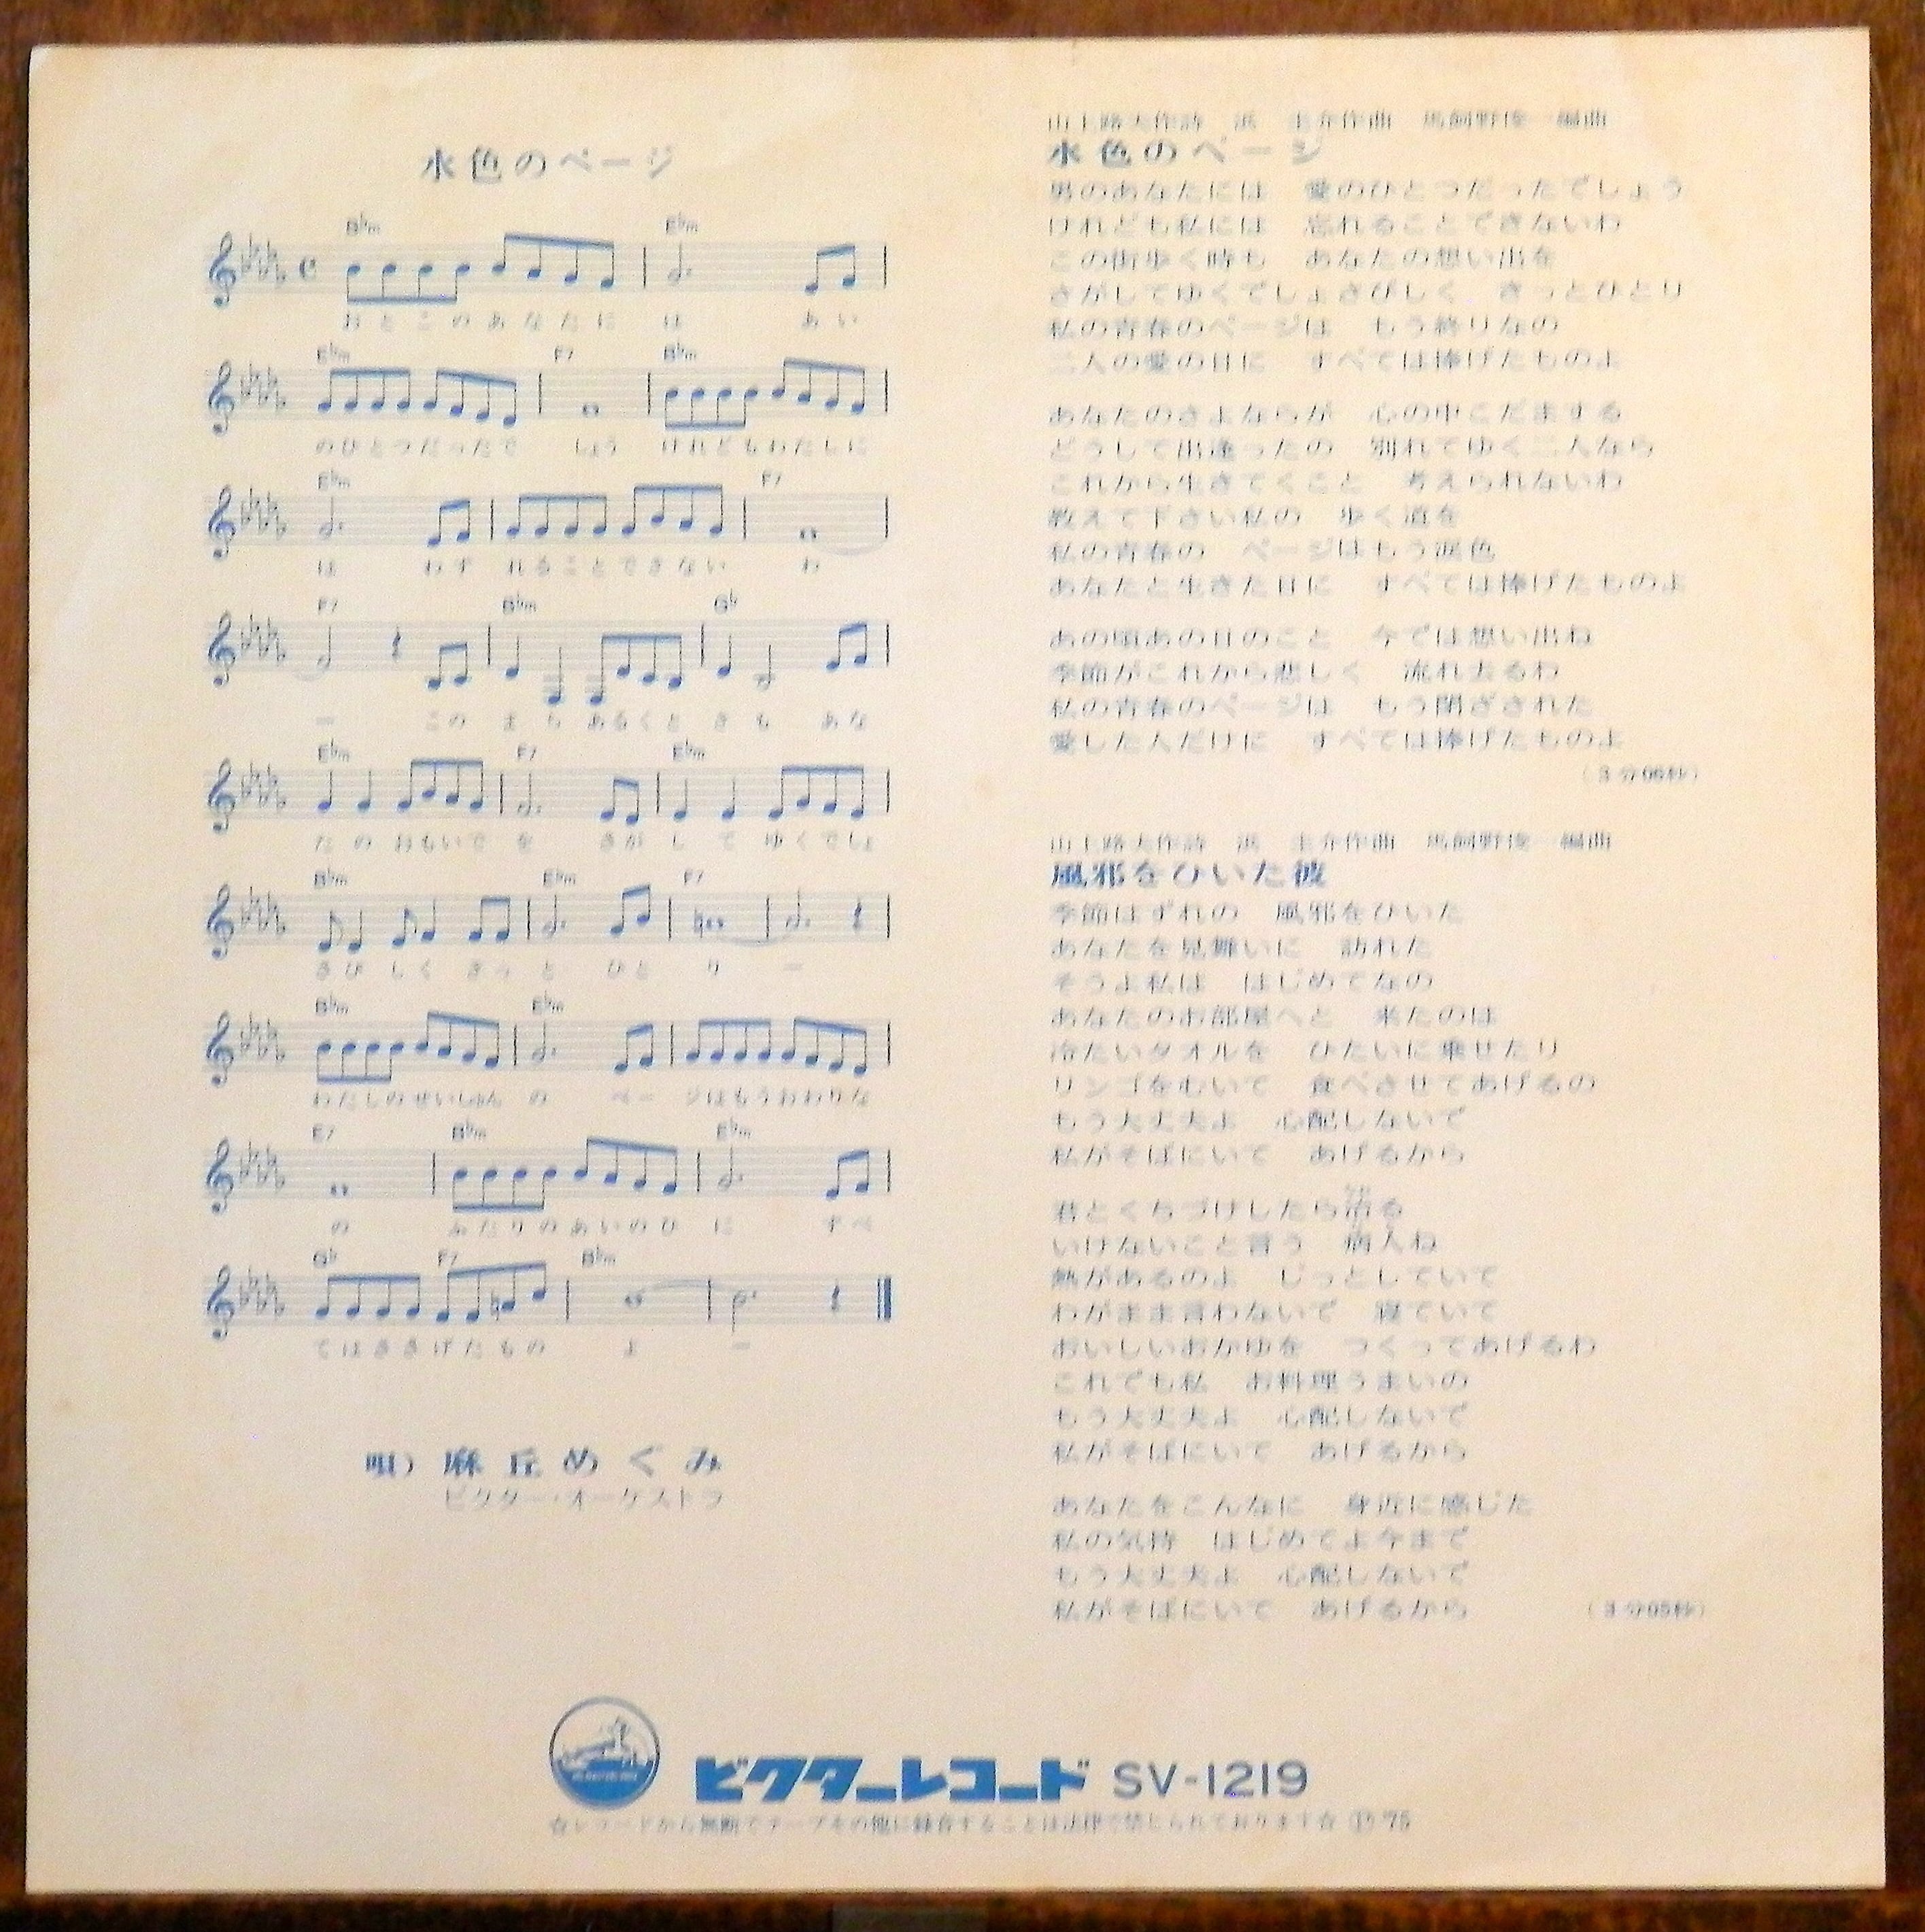 75【EP】麻丘めぐみ 水色のページ 音盤窟レコード